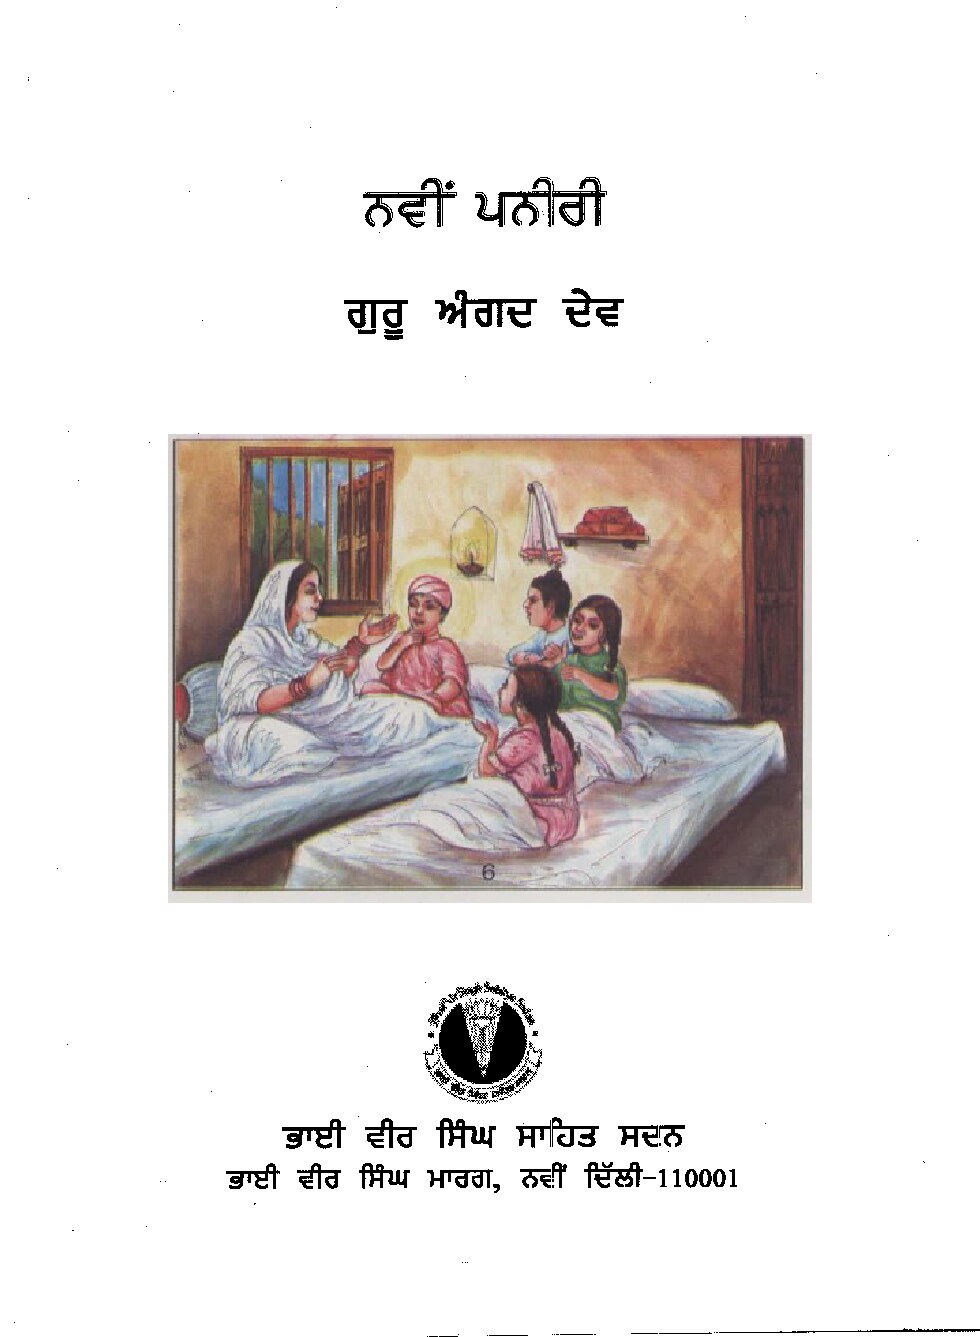 ਨਵੀਂ ਪਨੀਰੀ - Navin Paneeri Guru Angad Dev